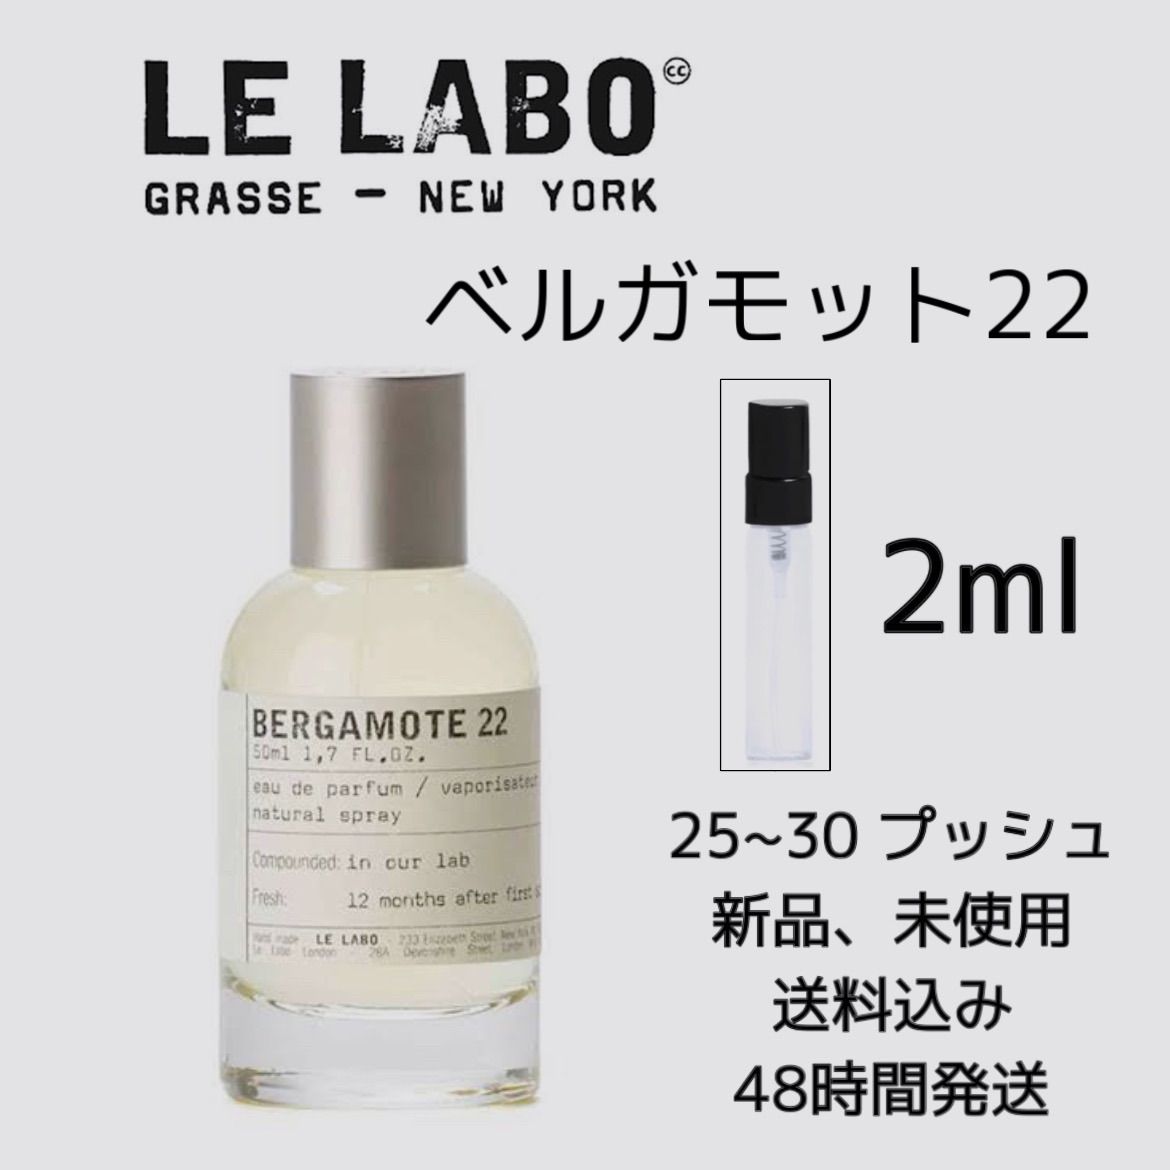 新品 国内正規品 お試し香水 2ml ルラボ ベルガモット 22 LELABO